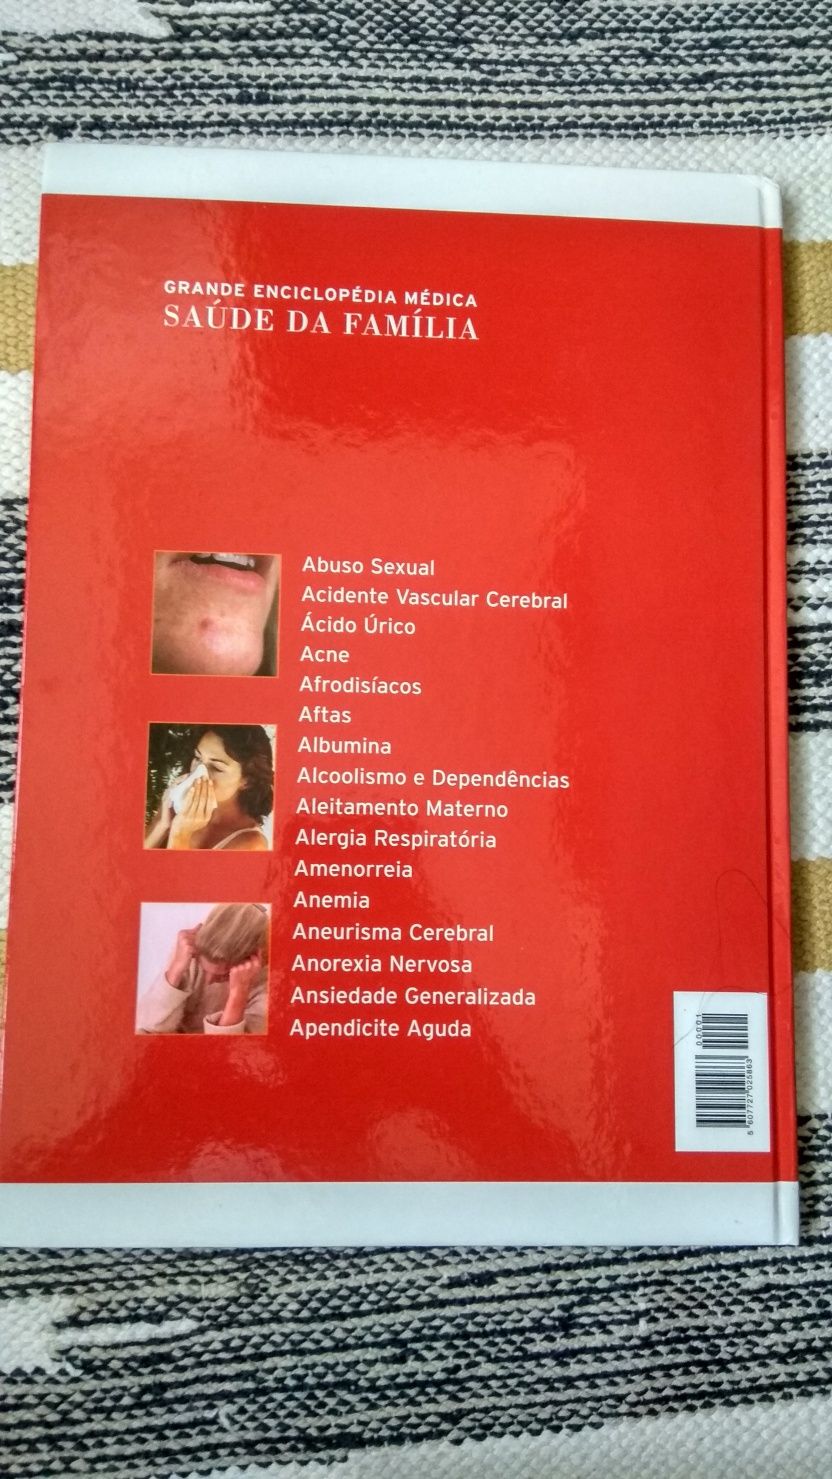 "Grande Enciclopédia Médica - Saúde da Família" Volume 1